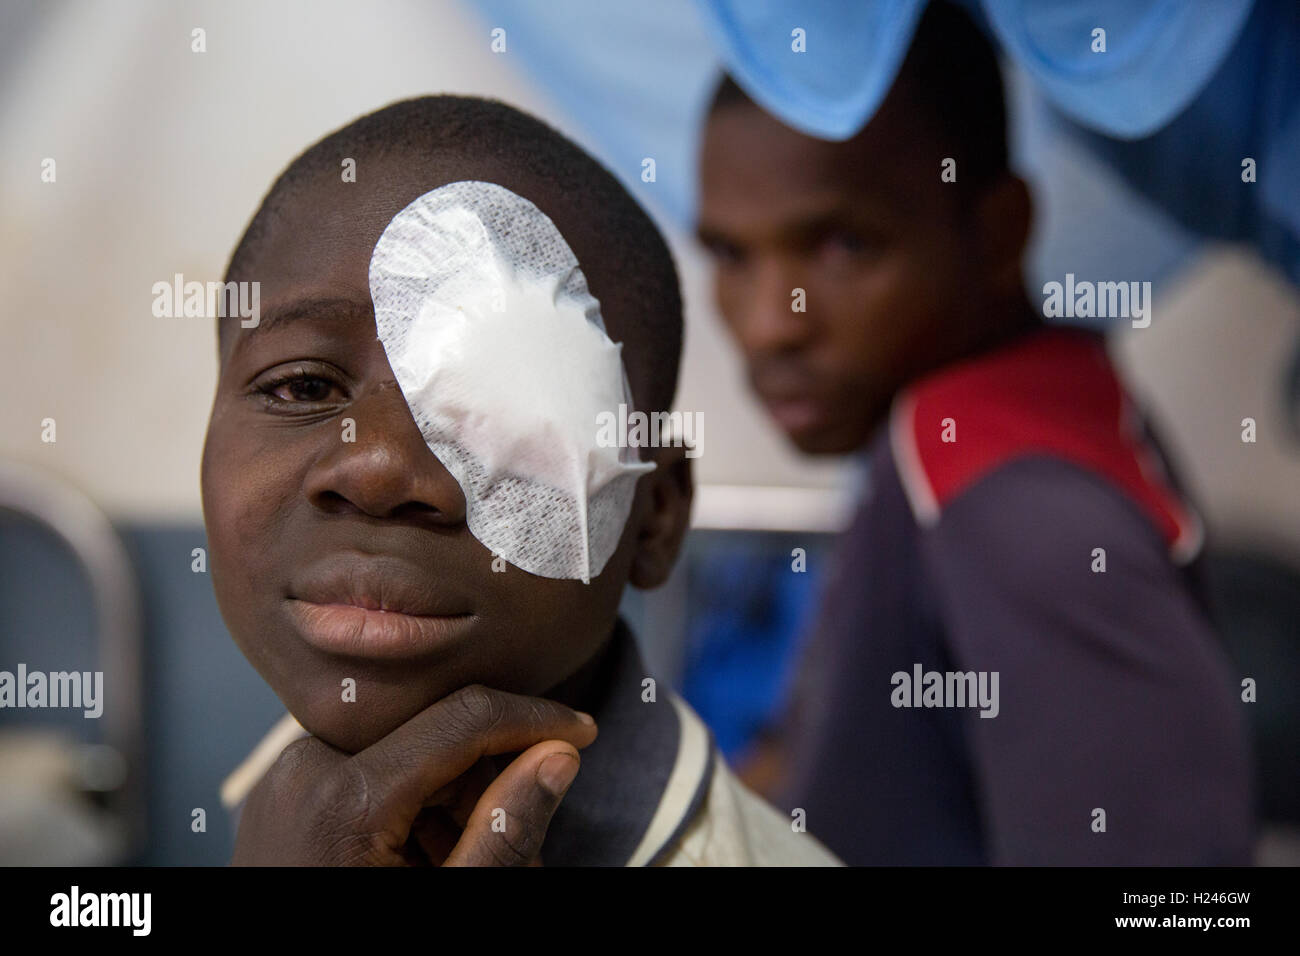 Hôpital Ribaue, Ribaue, province de Nampula, Mozambique, Août 2015 : Saide Antonio, 16 ans, aura le bandage enlevé de son œil gauche demain après sa deuxième opération pour cataractes bilatérales. Photo de Mike Goldwater Banque D'Images